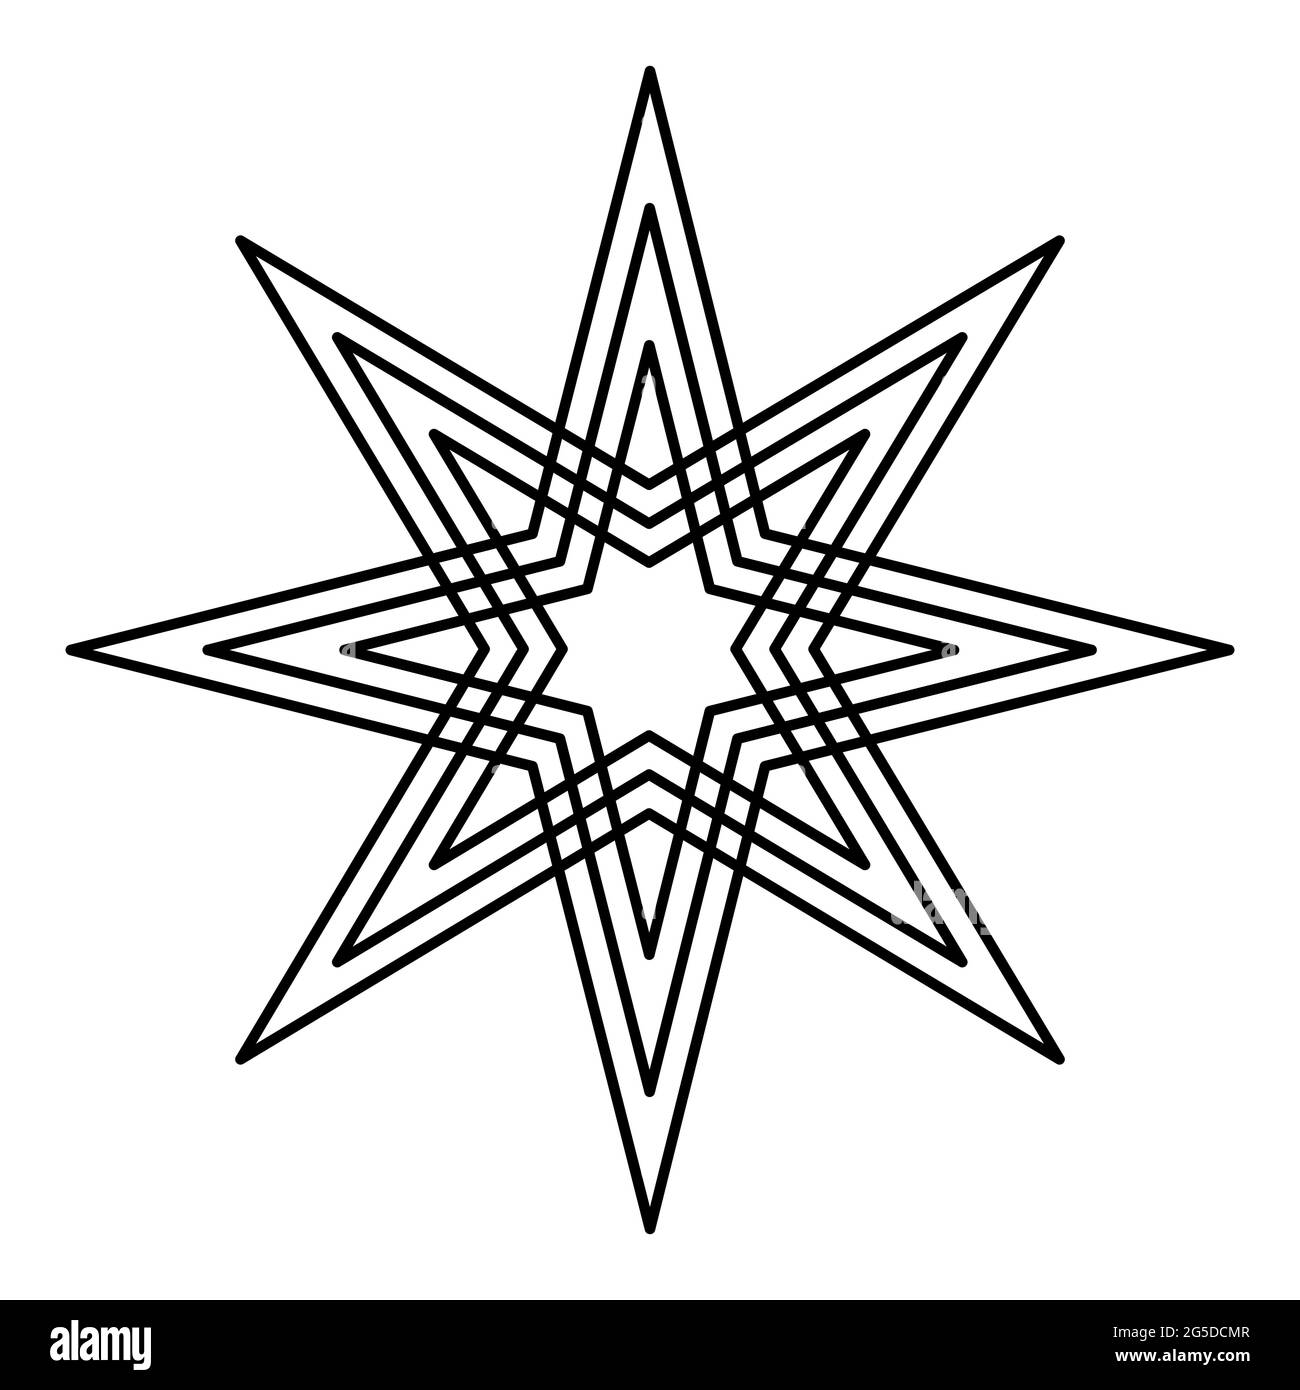 Estrella de ocho puntas con líneas de equidistancia. Dos estrellas de cuatro puntas, cada una con tres líneas, colocadas simétricas una sobre la otra. Octagrama. Foto de stock